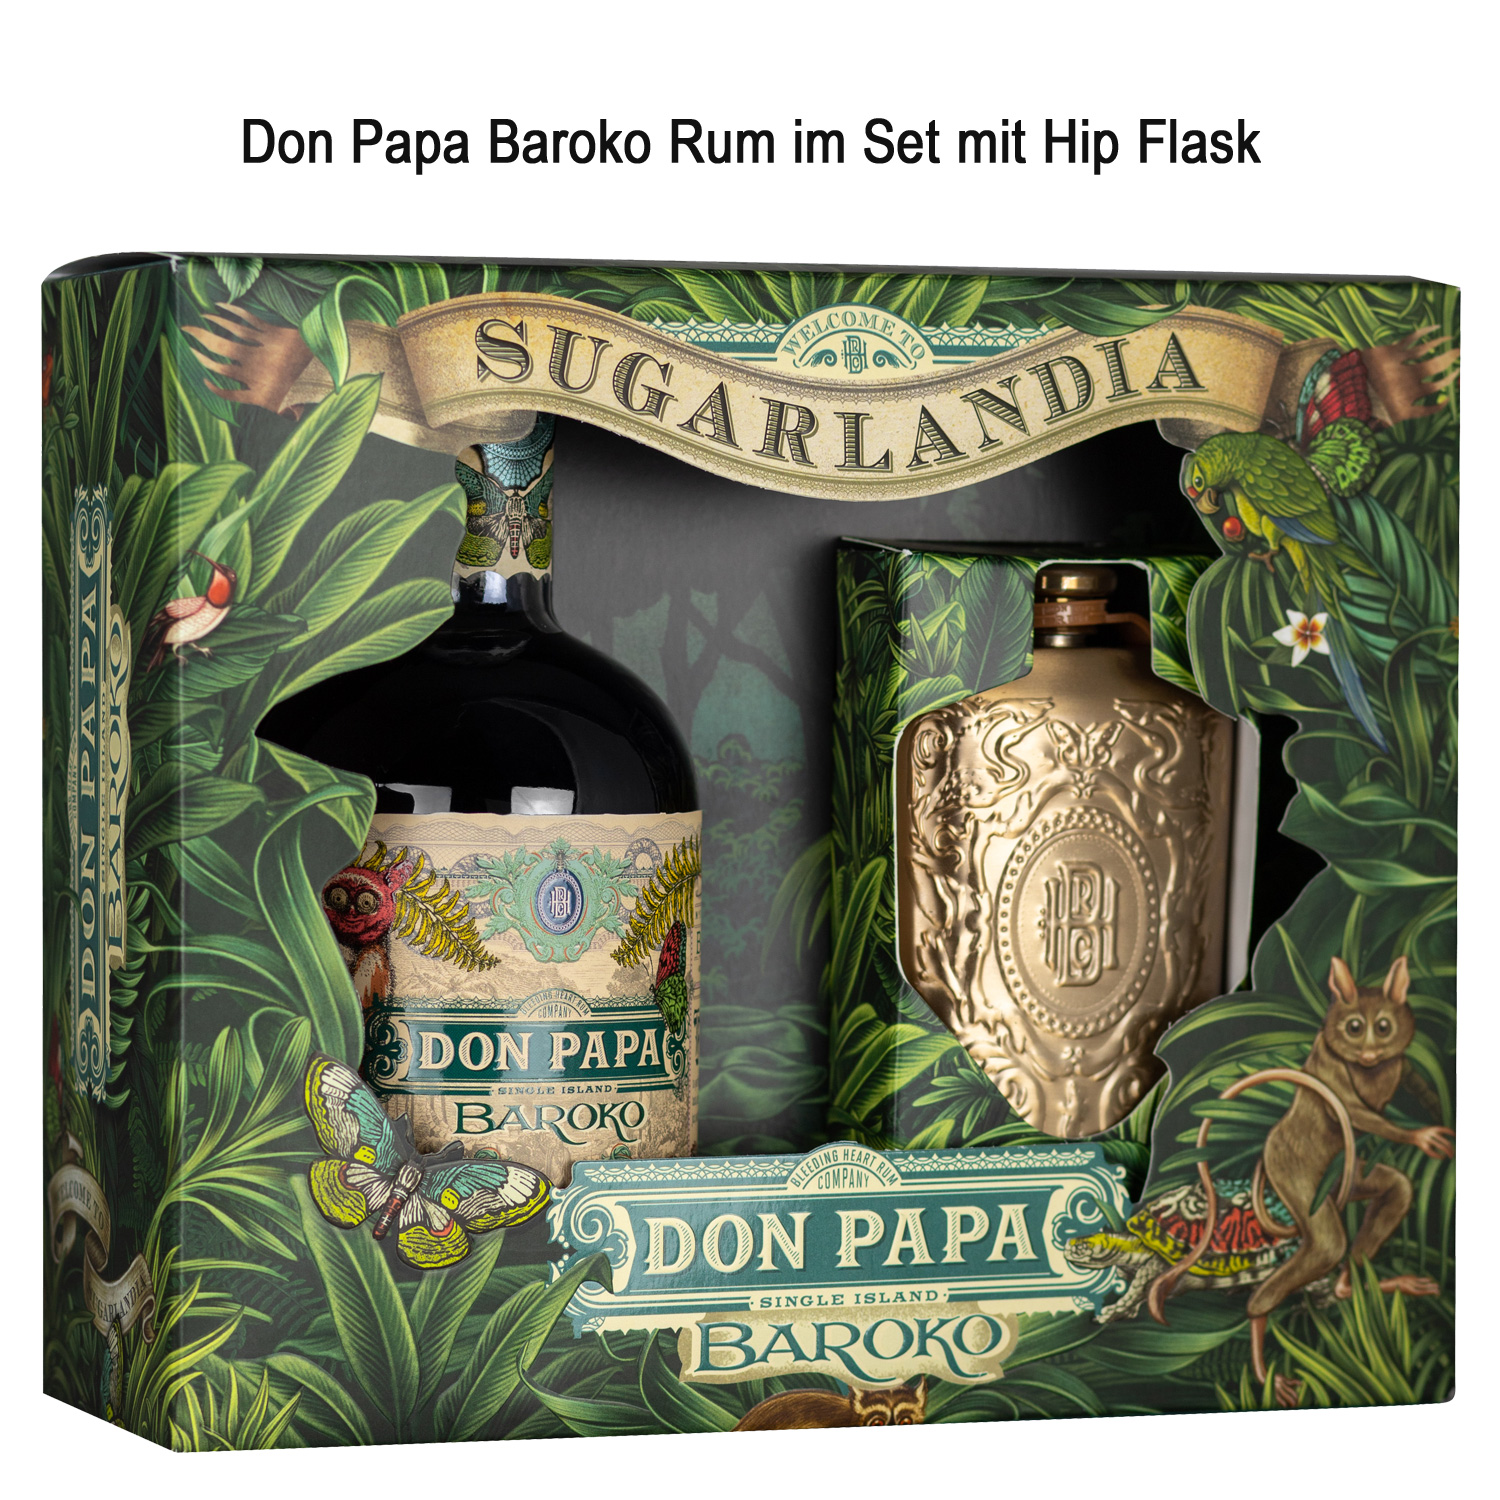 Don Papa Baroko Rum mit Hip Flask